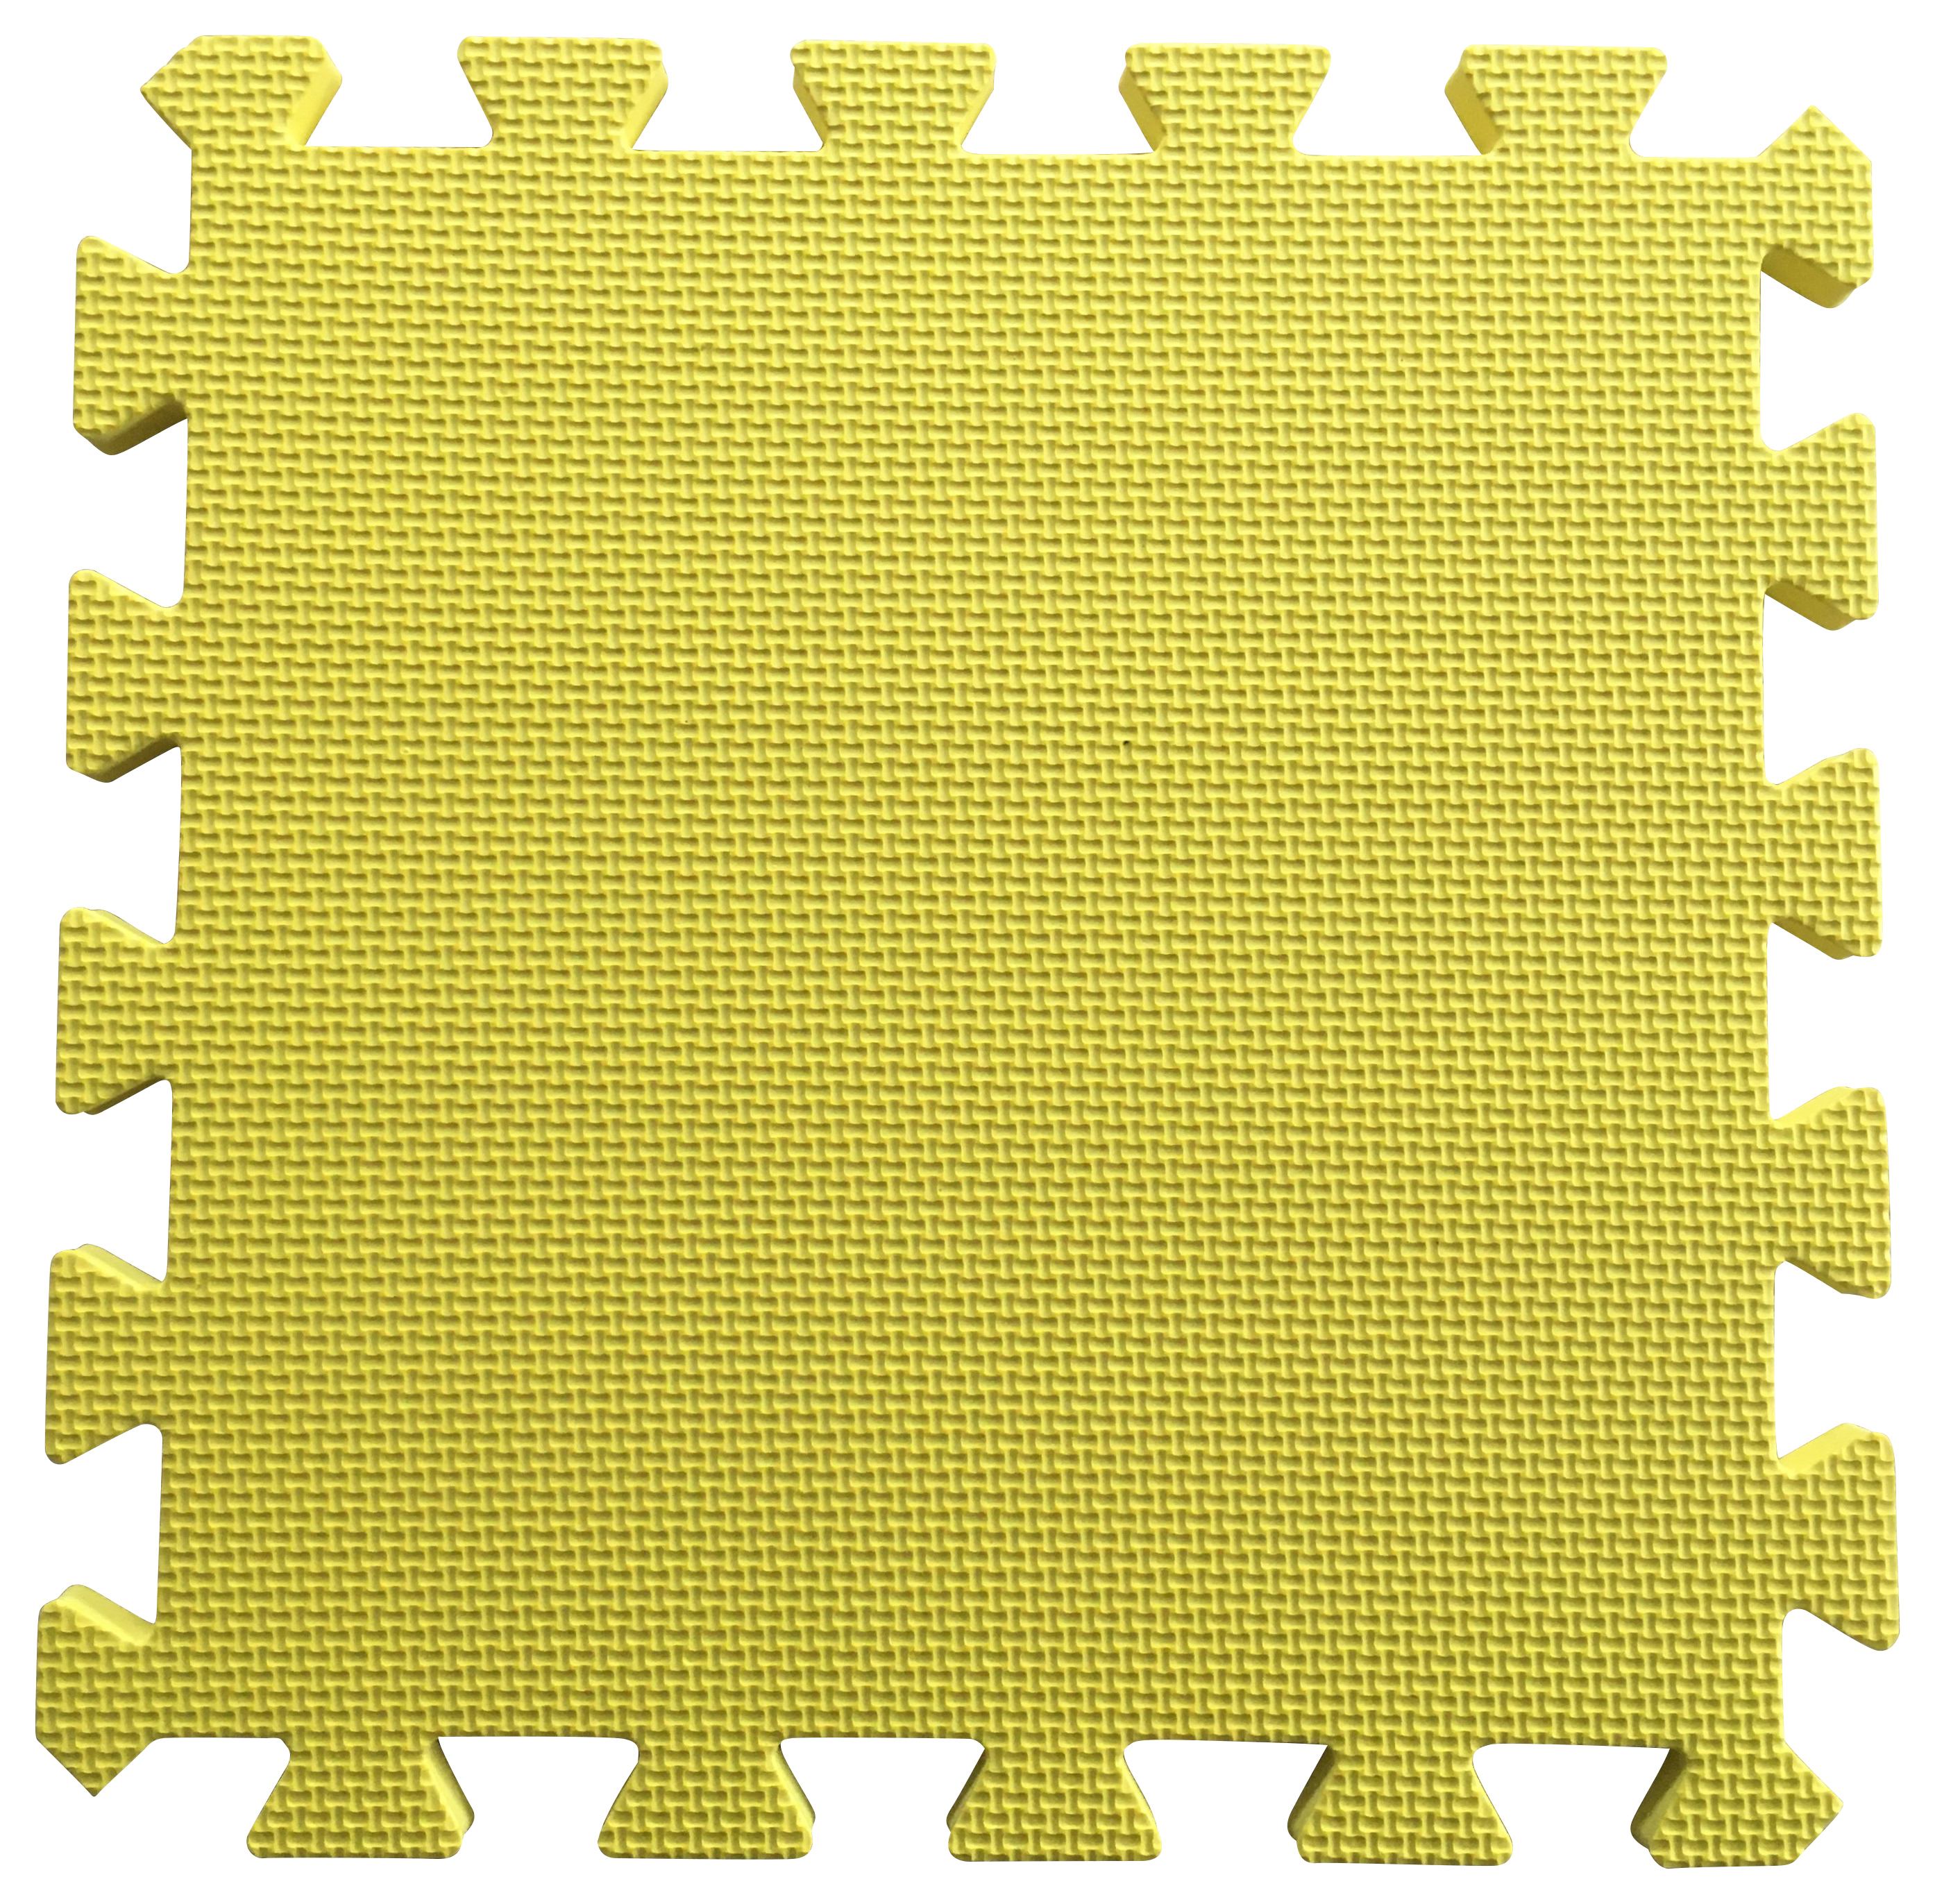 Warm Floor Yellow Interlocking Floor Tiles for Garden Buildings - 6 x 7ft